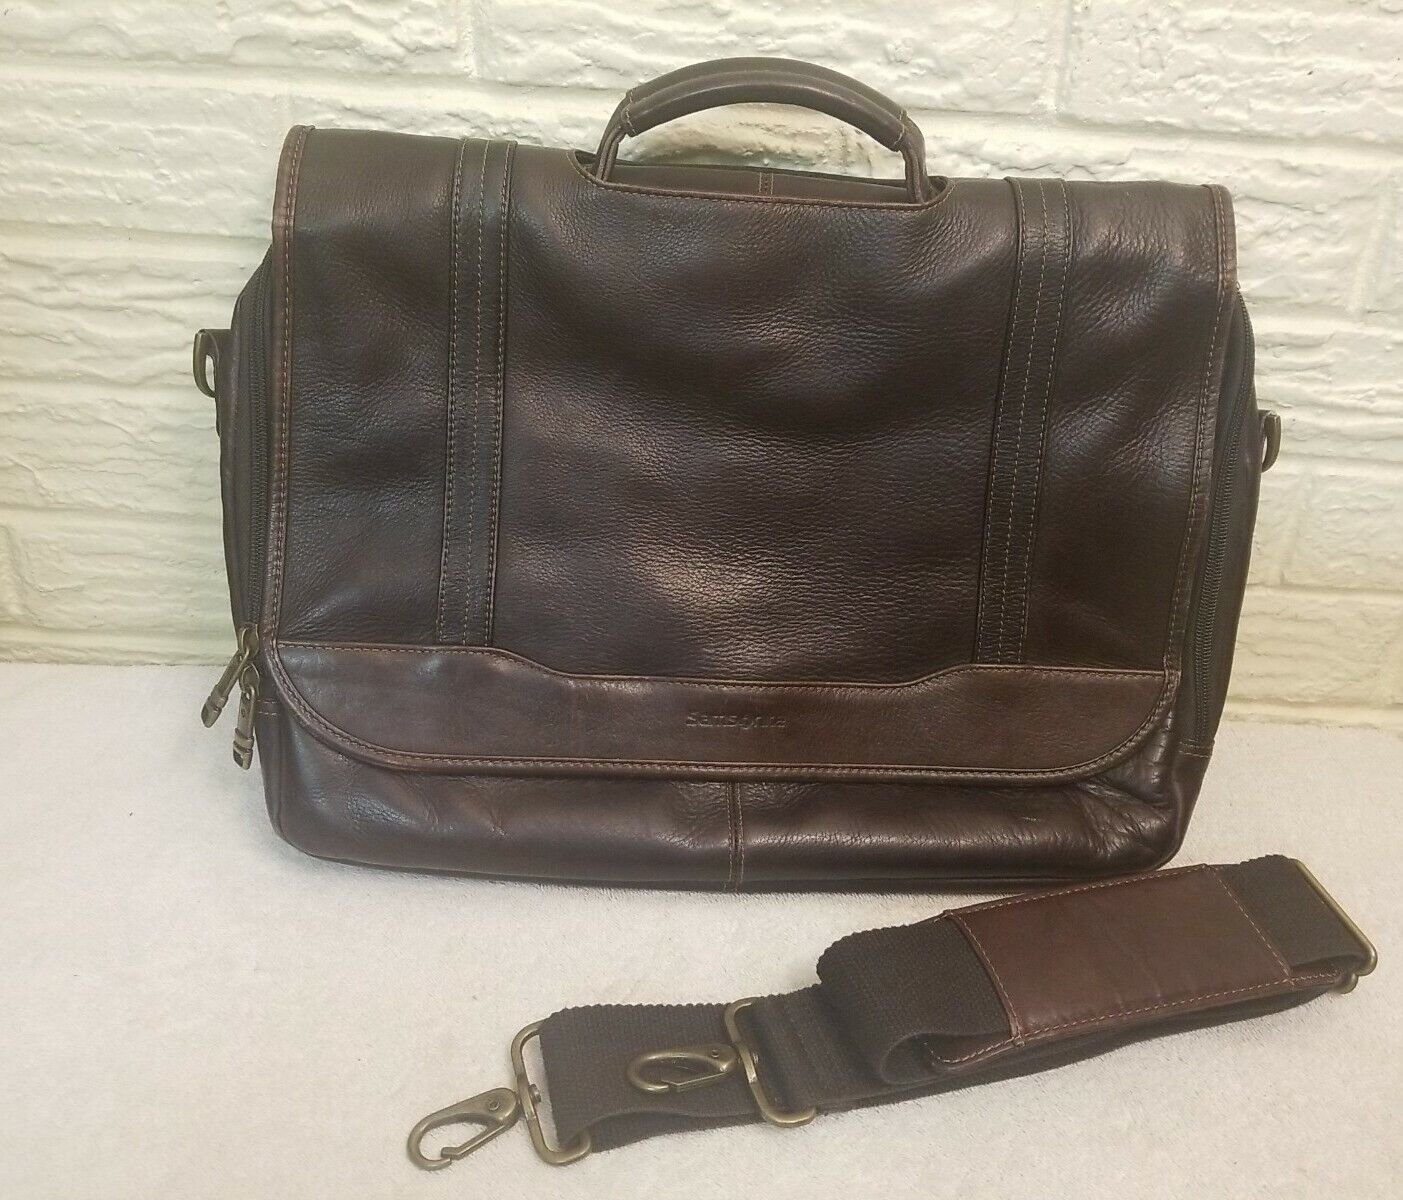 SamsonIte All Leather Messenger Flap Over Laptop Briefcase Bag  Shoulder Strap